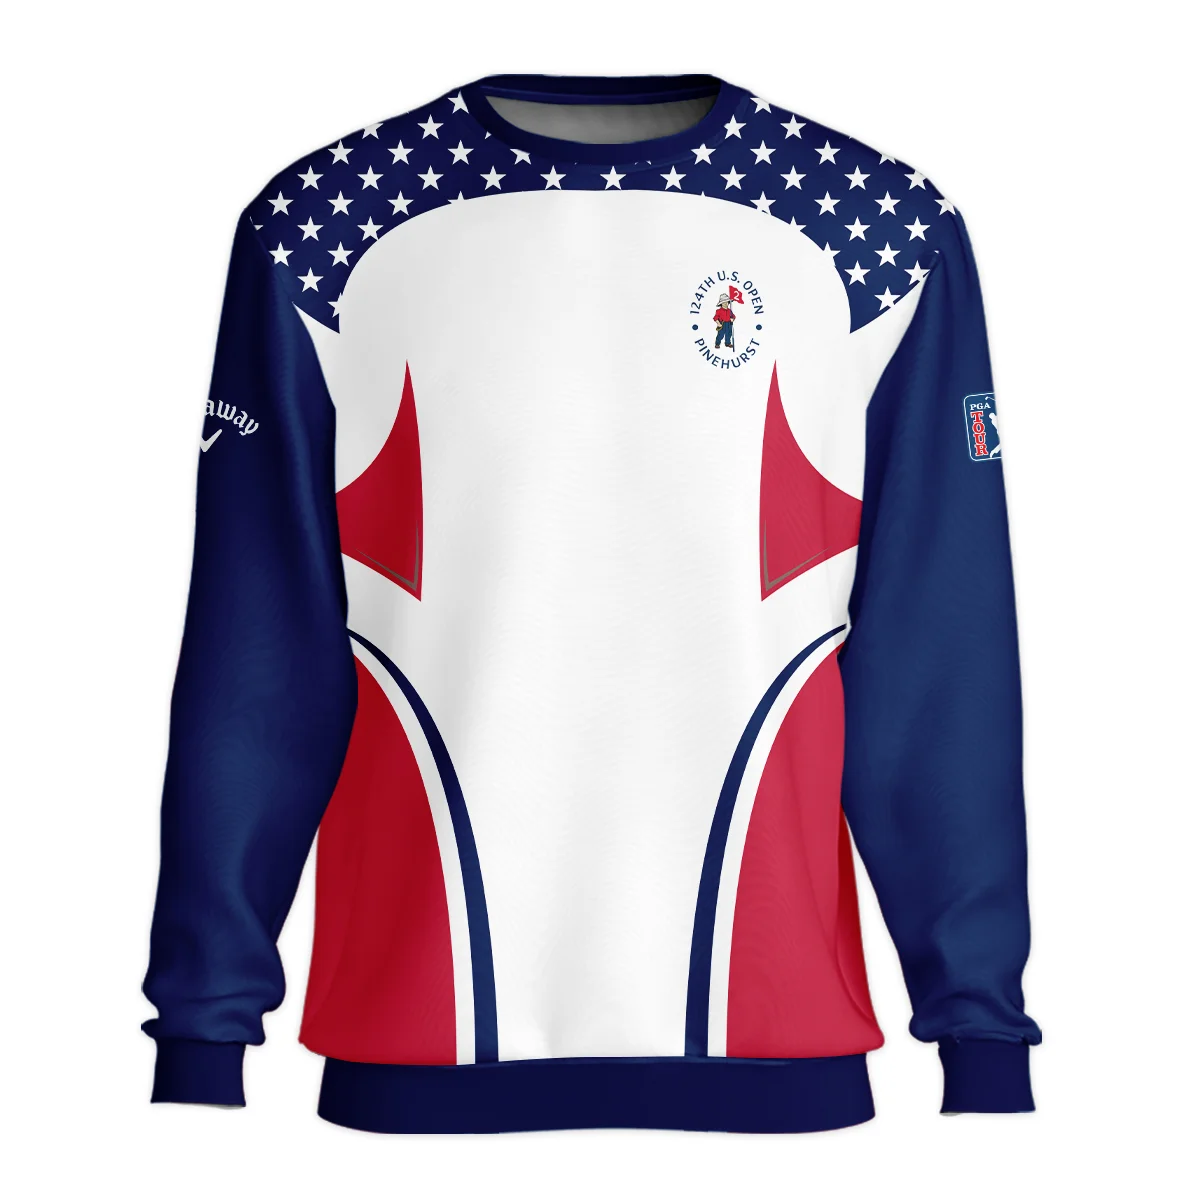 124th U.S. Open Pinehurst Callaway Stars White Dark Blue Red Line Unisex Sweatshirt Style Classic Sweatshirt